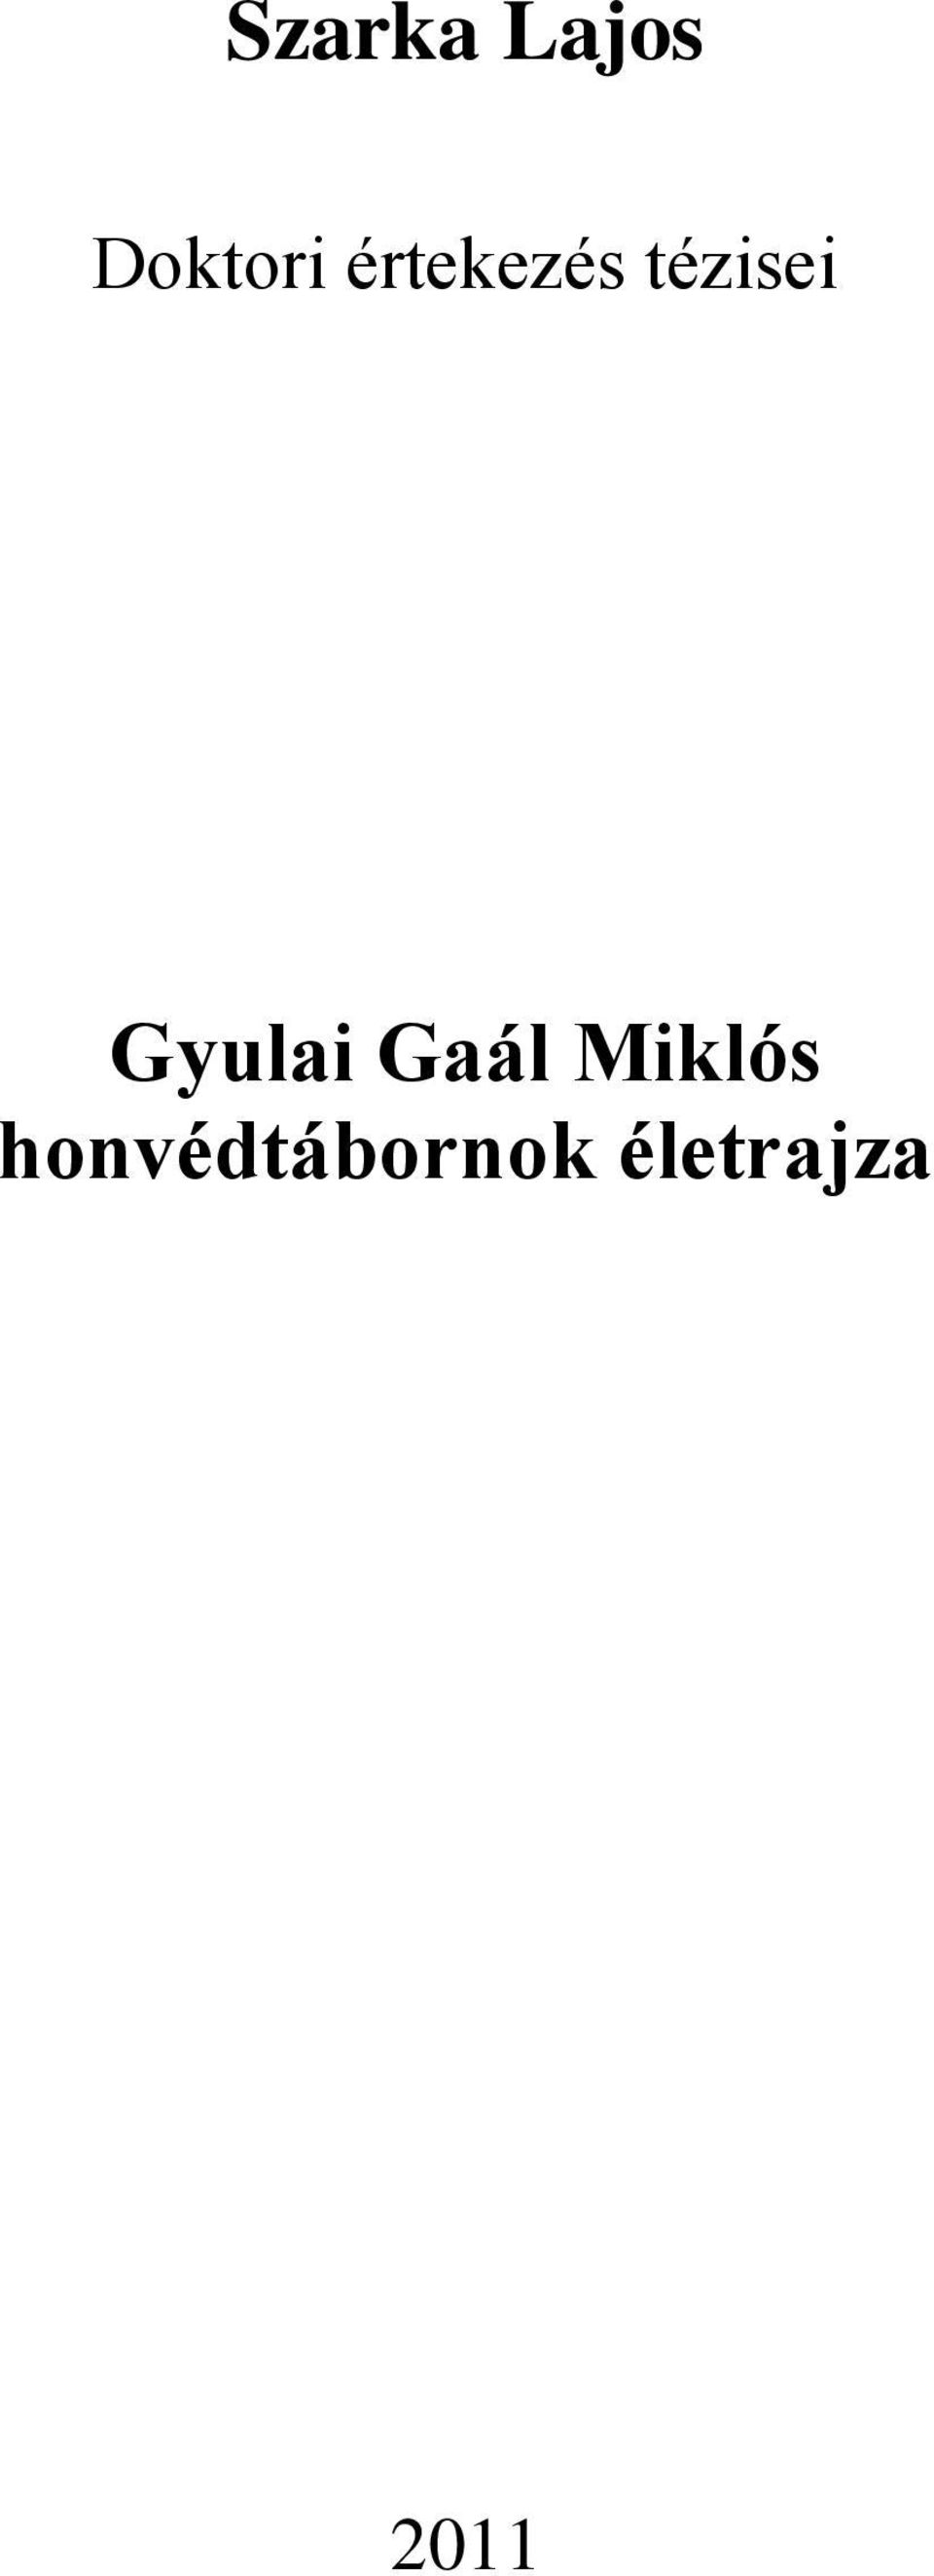 Gyulai Gaál Miklós